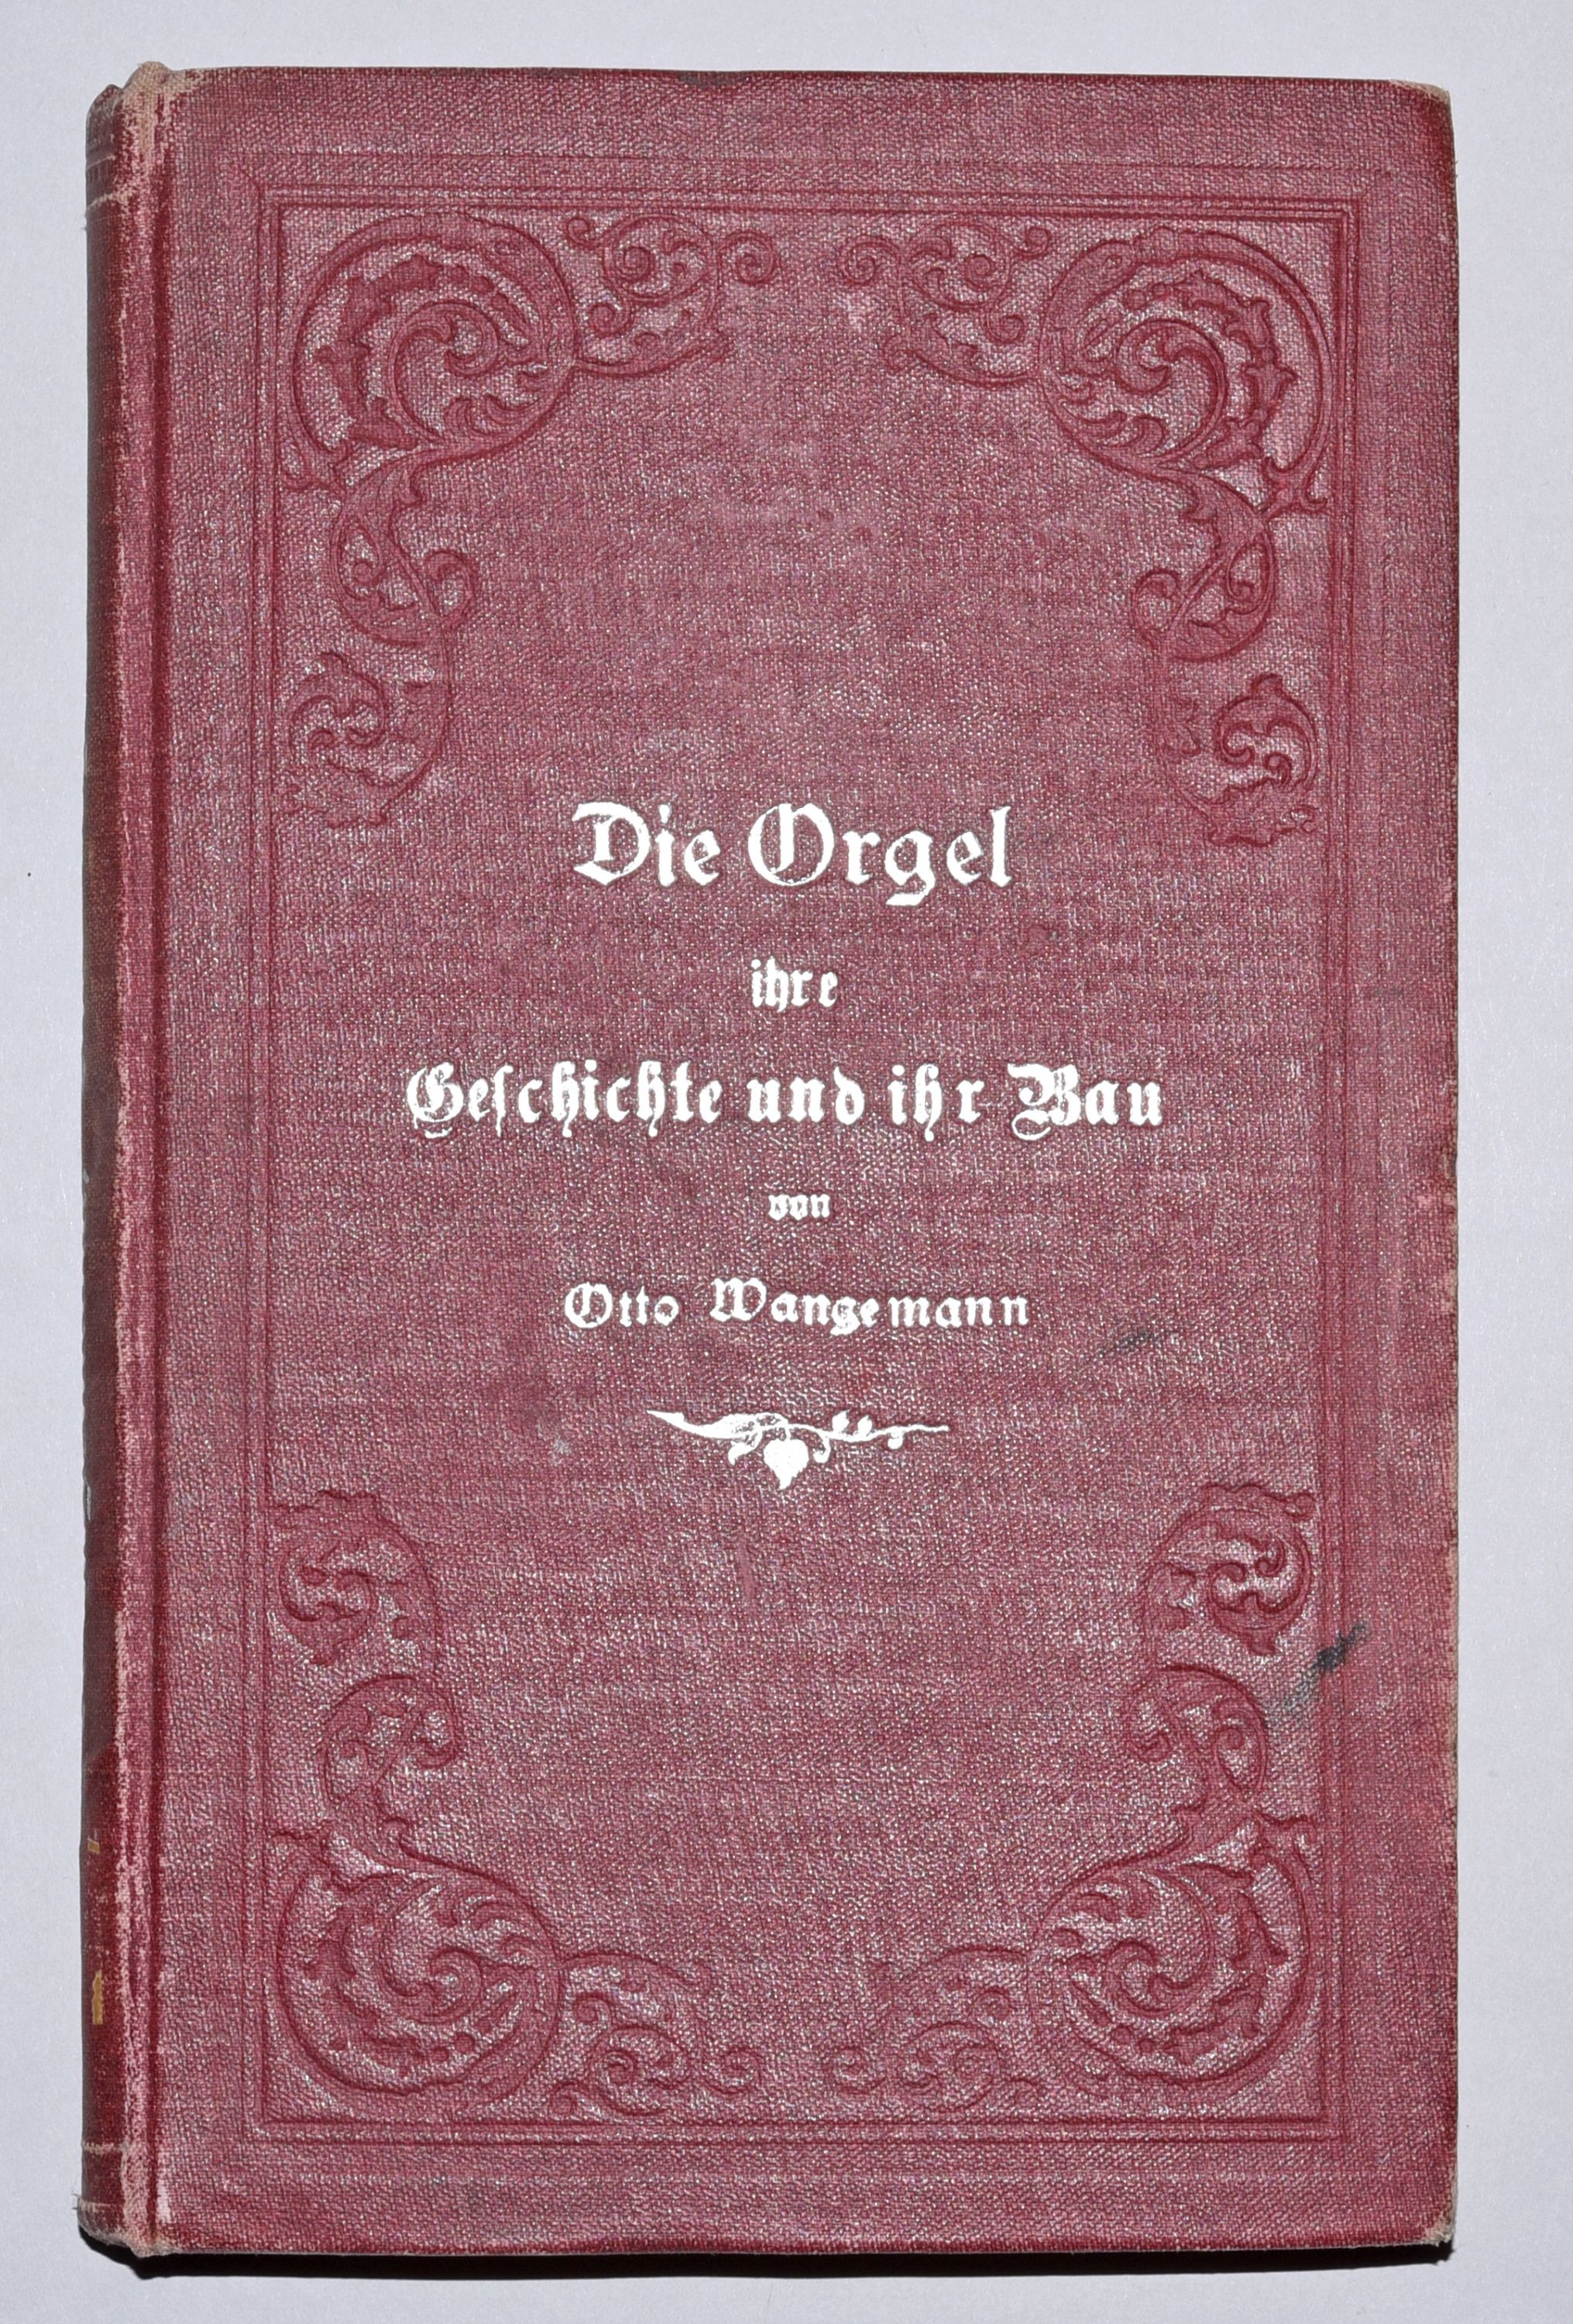 Buch: "Die Orgel, ihre Geschichte und ihr Bau" (Gottfried-Silbermann-Museum CC BY-NC-SA)